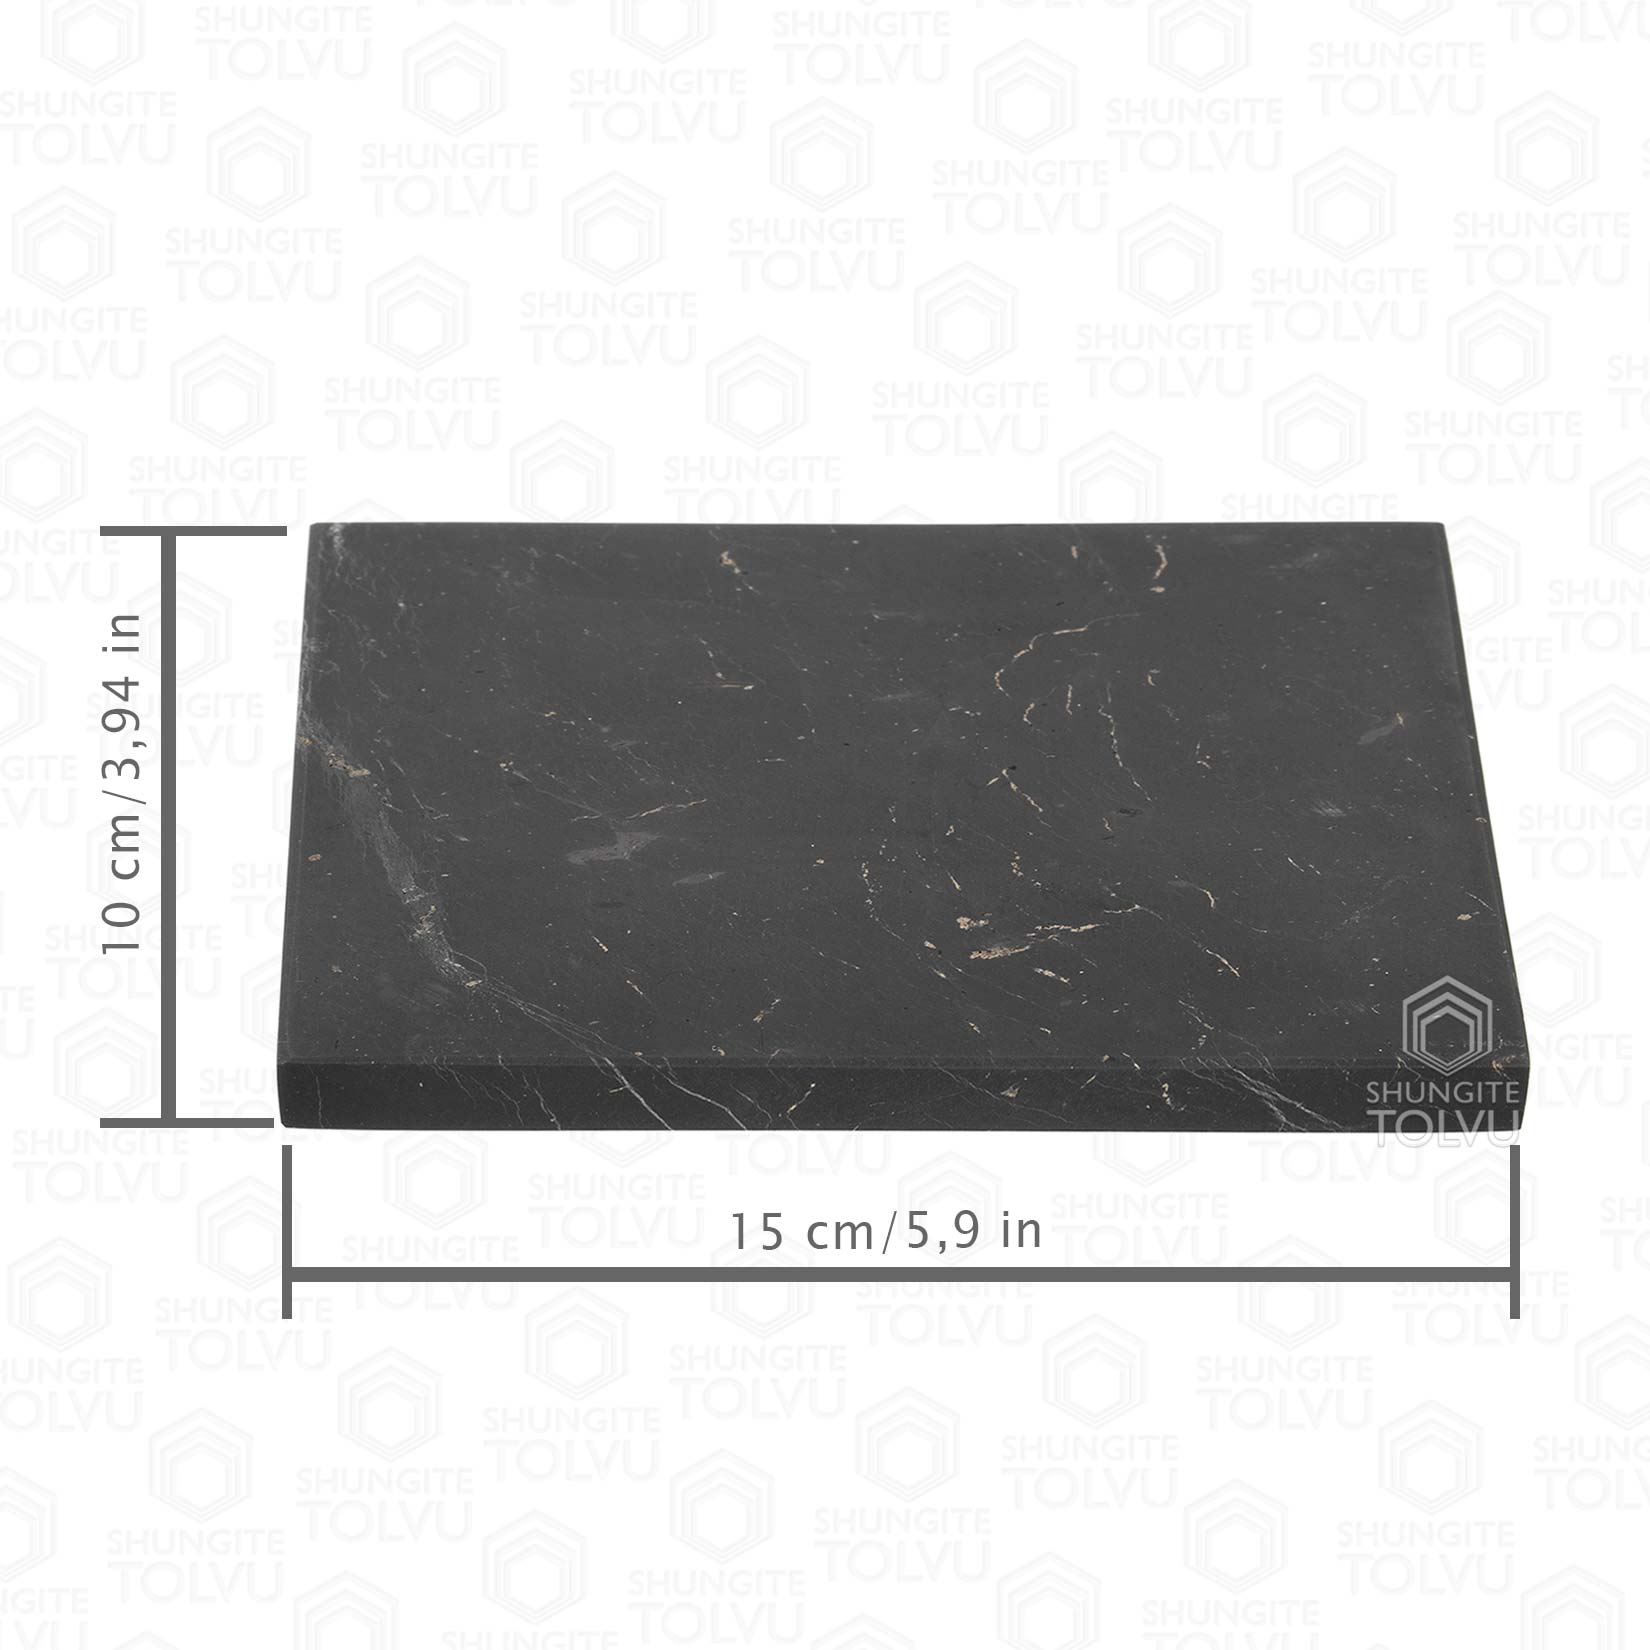 Shungite tile rectangular shape | Original shungite | Large size